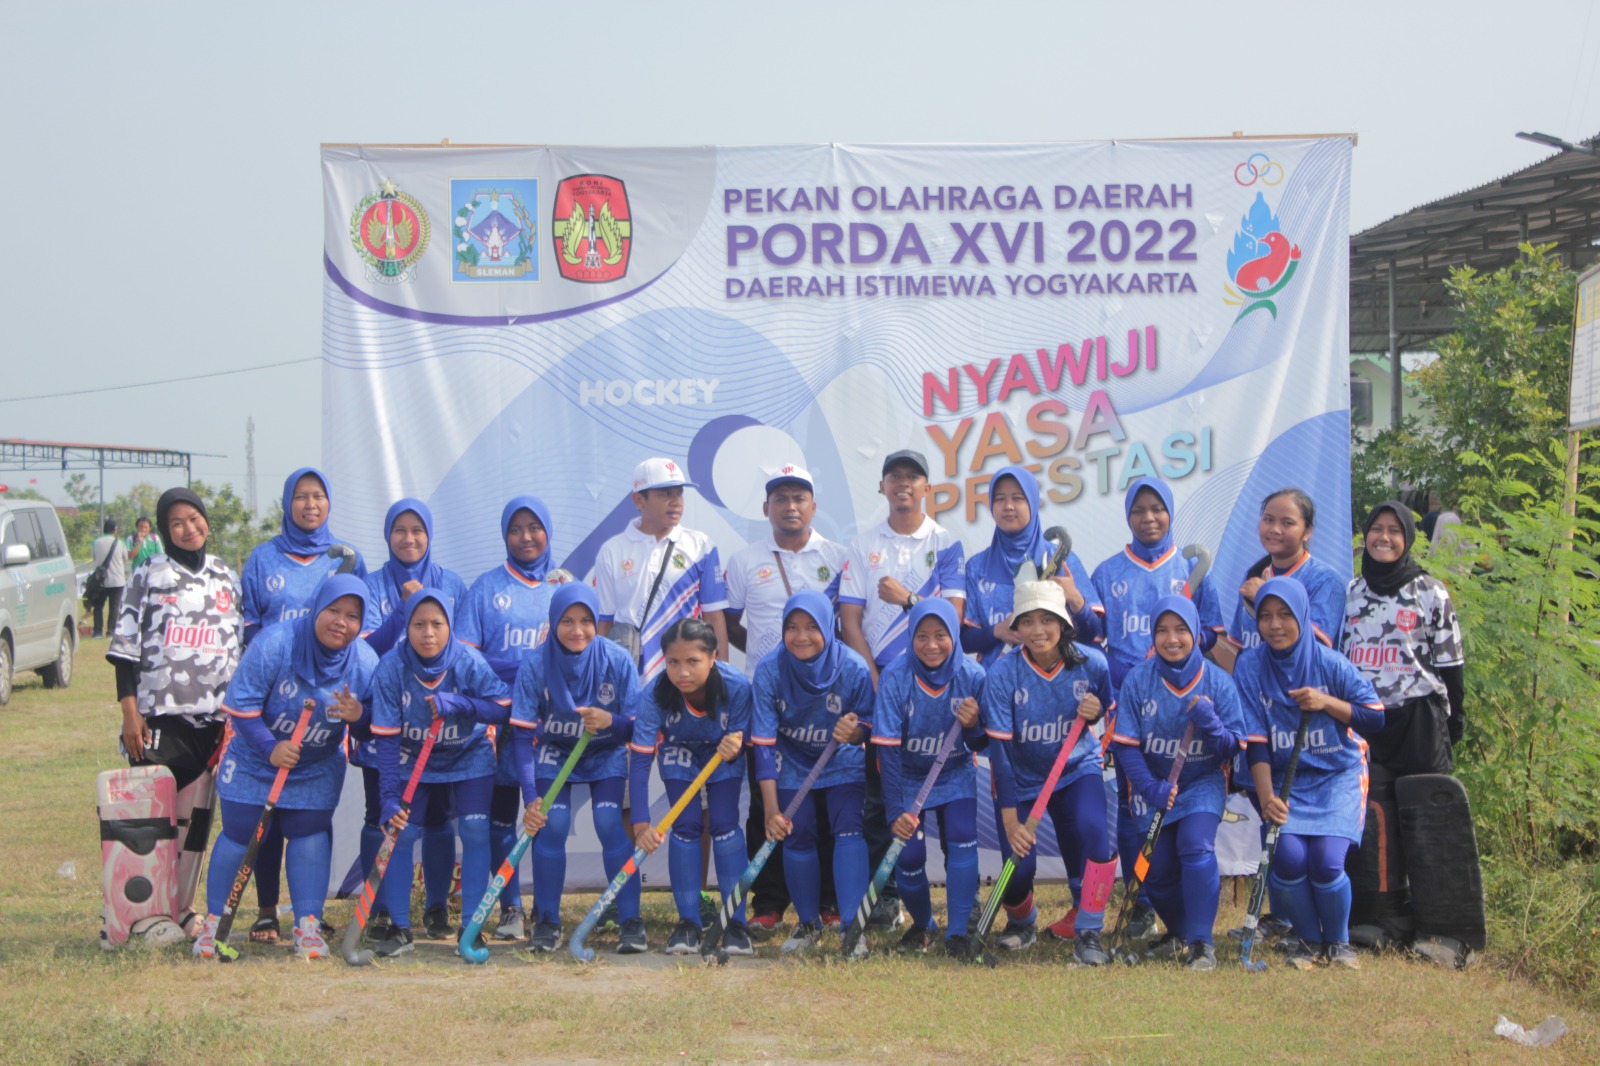 Foto Pekan Olahraga Daerah XVI 2022 Daerah Istimewa Yogyakarta Cabor Hockey